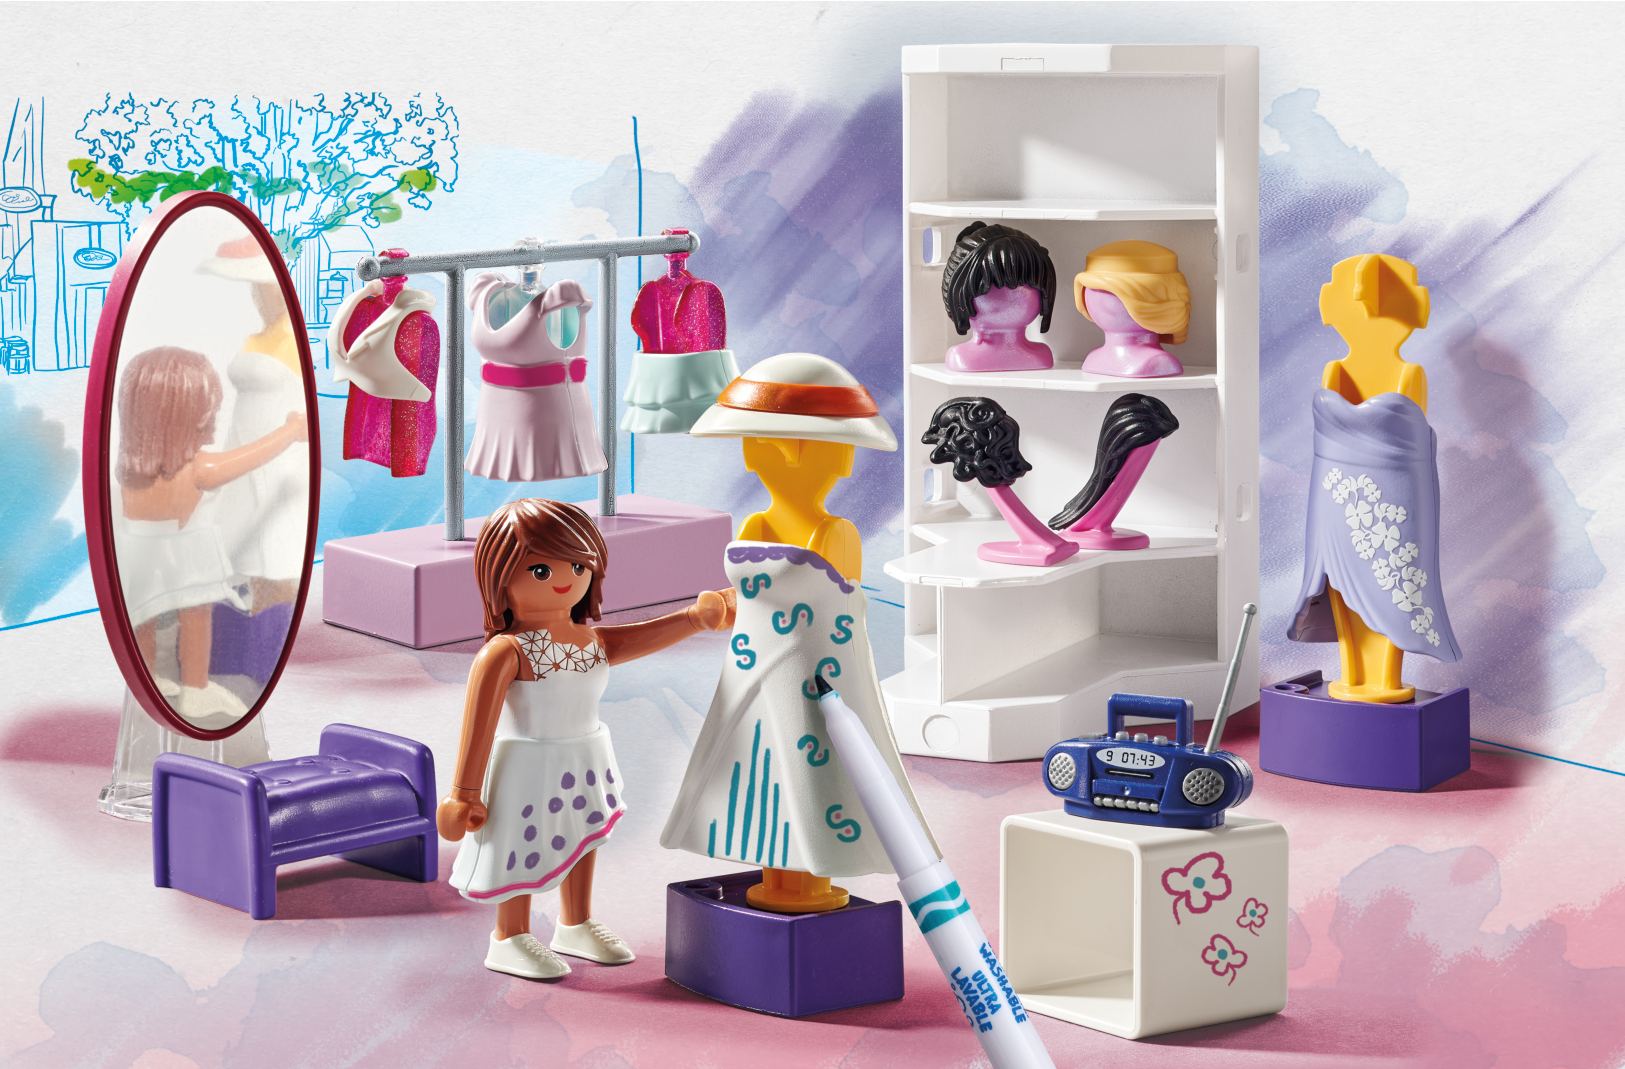 Playmobil color 71373 - atelier di moda per bambini dai 4 anni - Playmobil